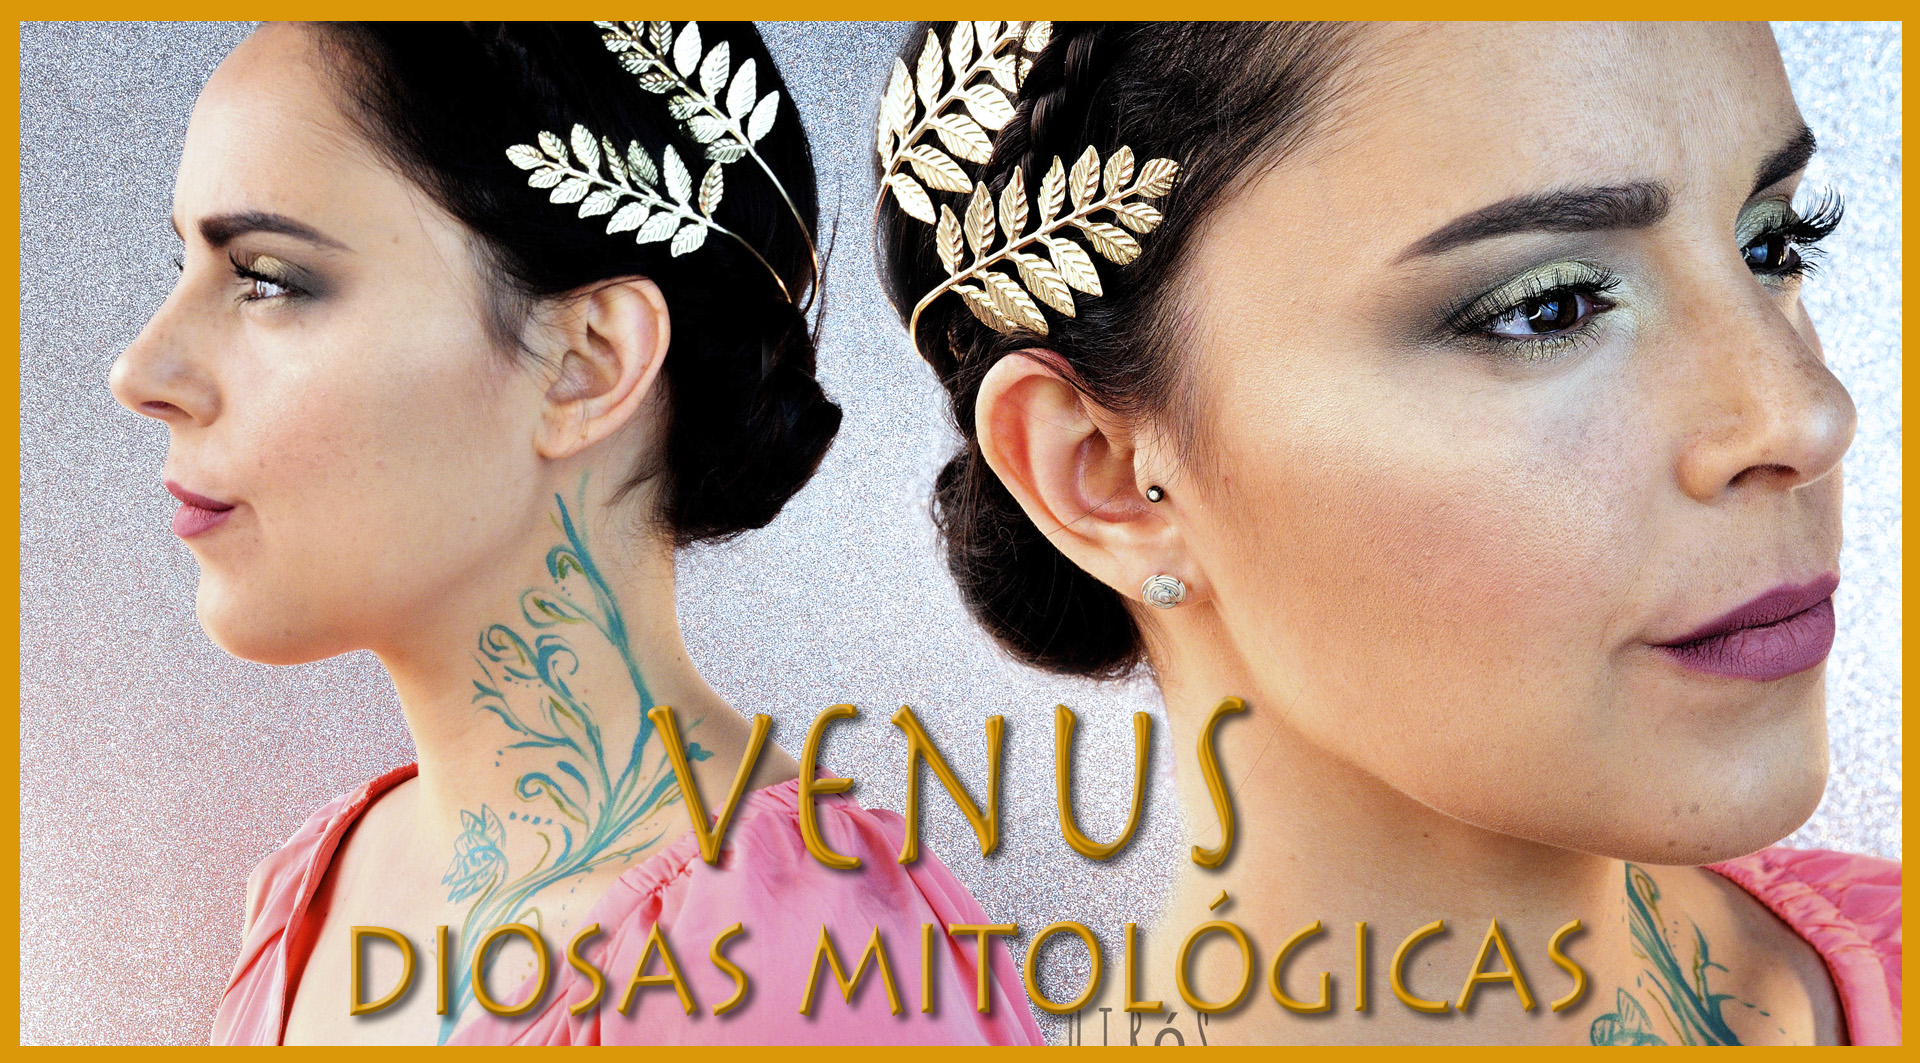 Mythological Goddesses Venus special effects makeup